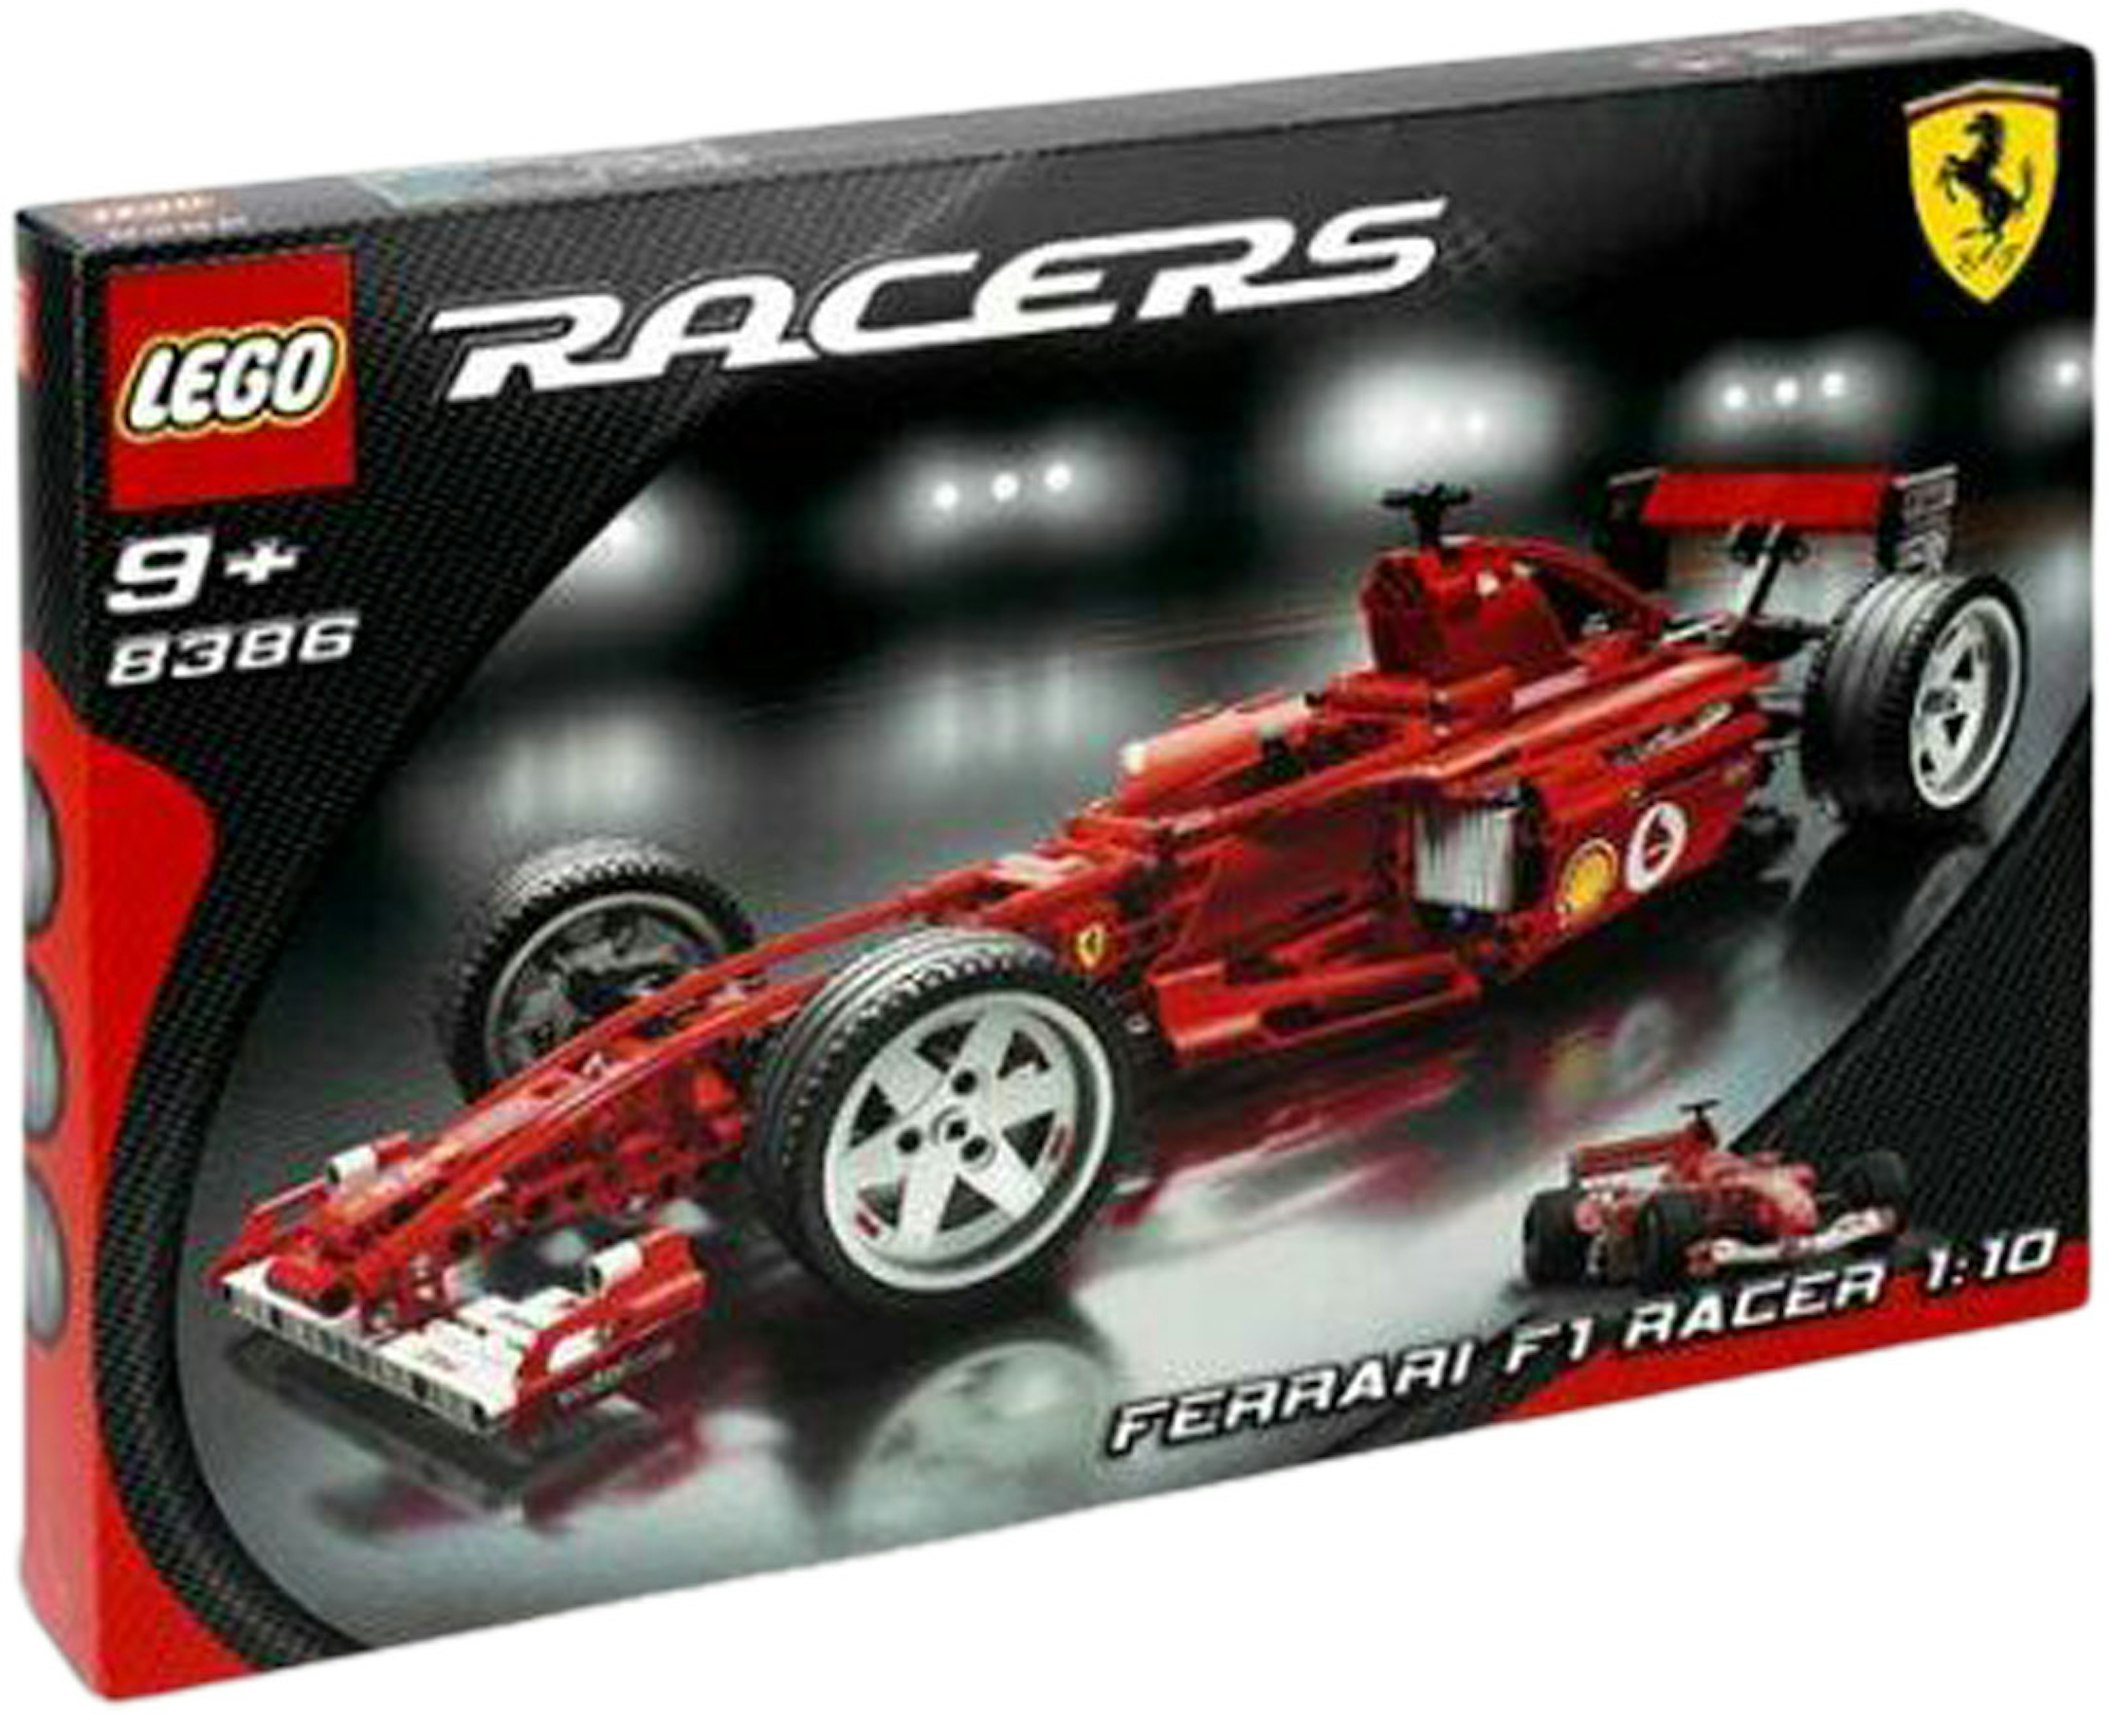 LEGO Ferrari Racer 1:10 Set 8386 -